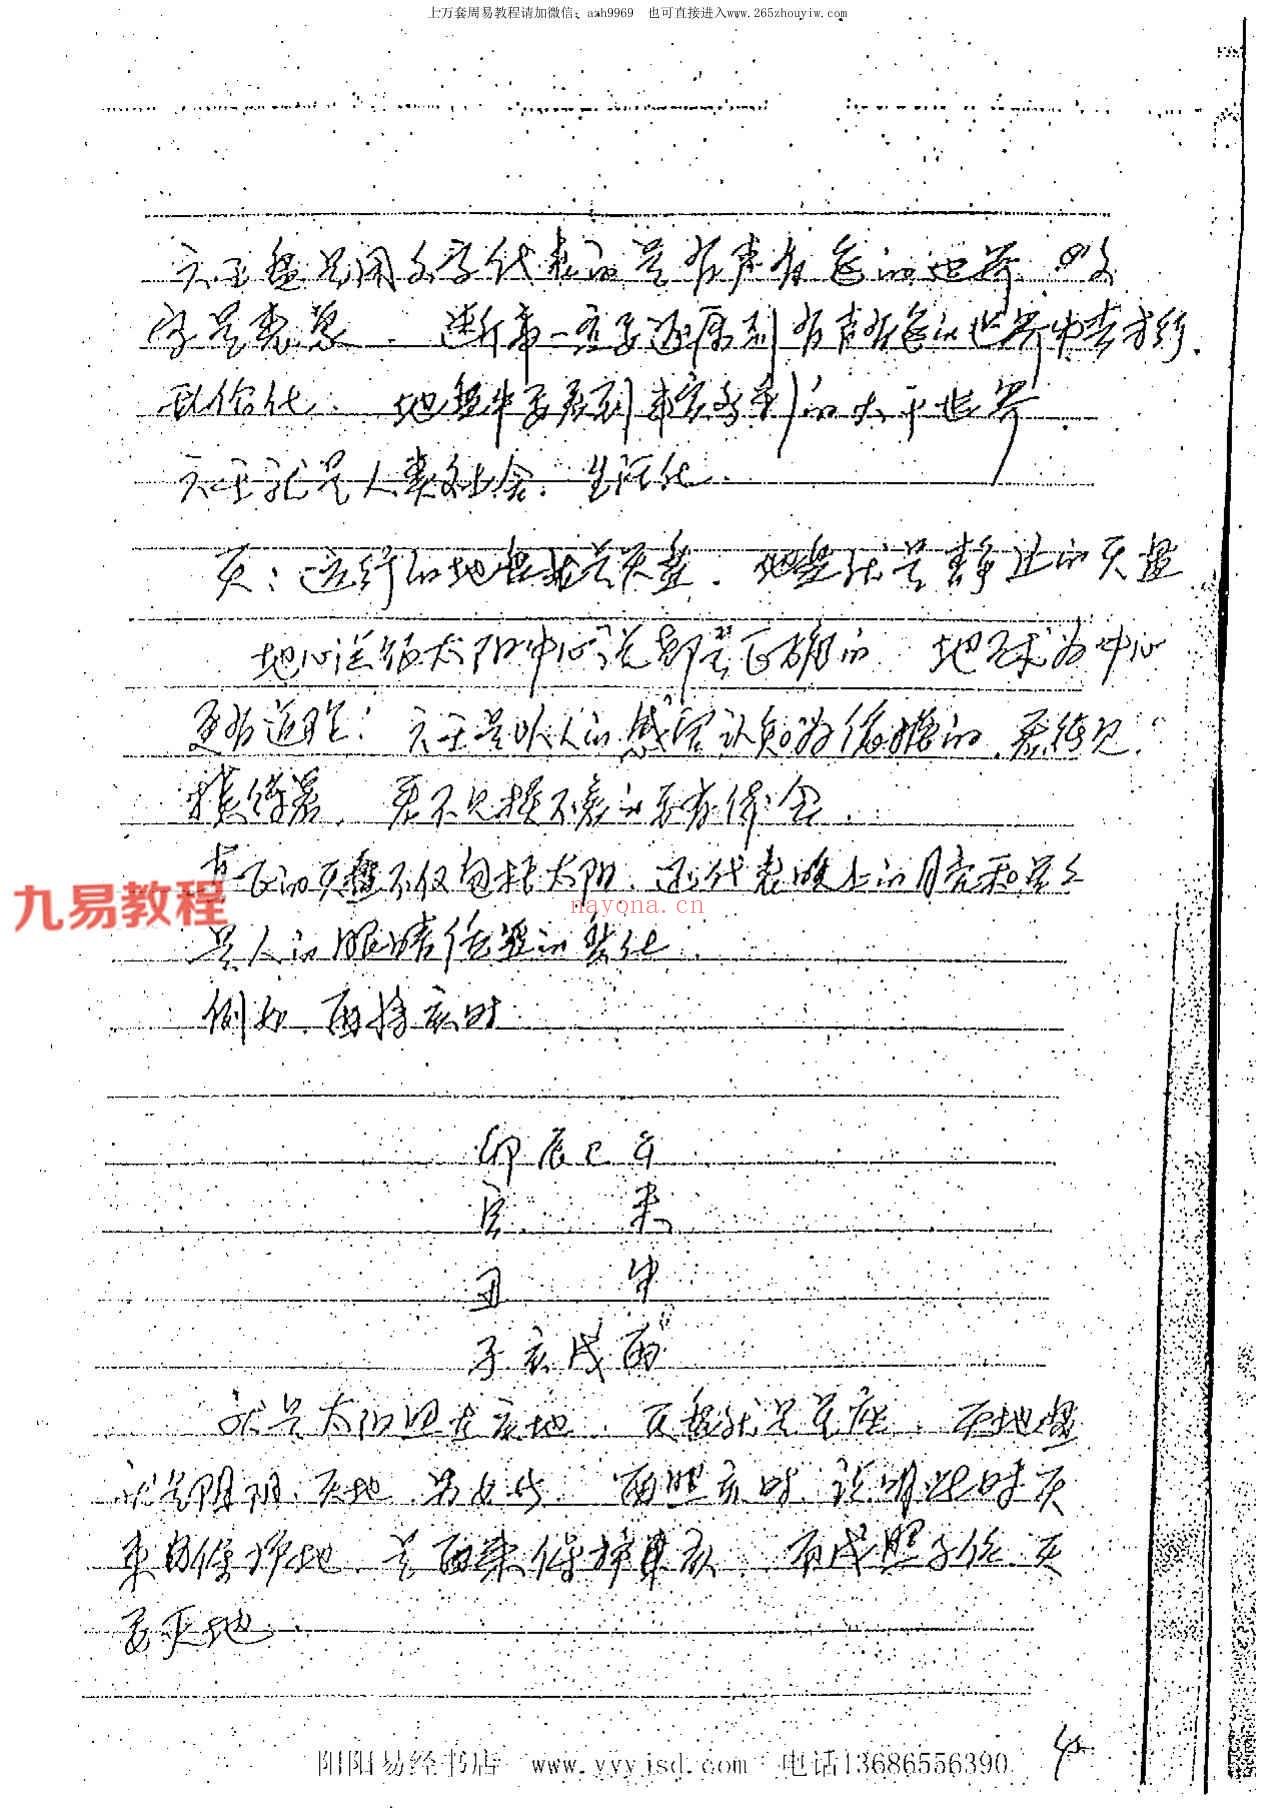 徐伟刚-正统大六壬面授录音+笔记pdf